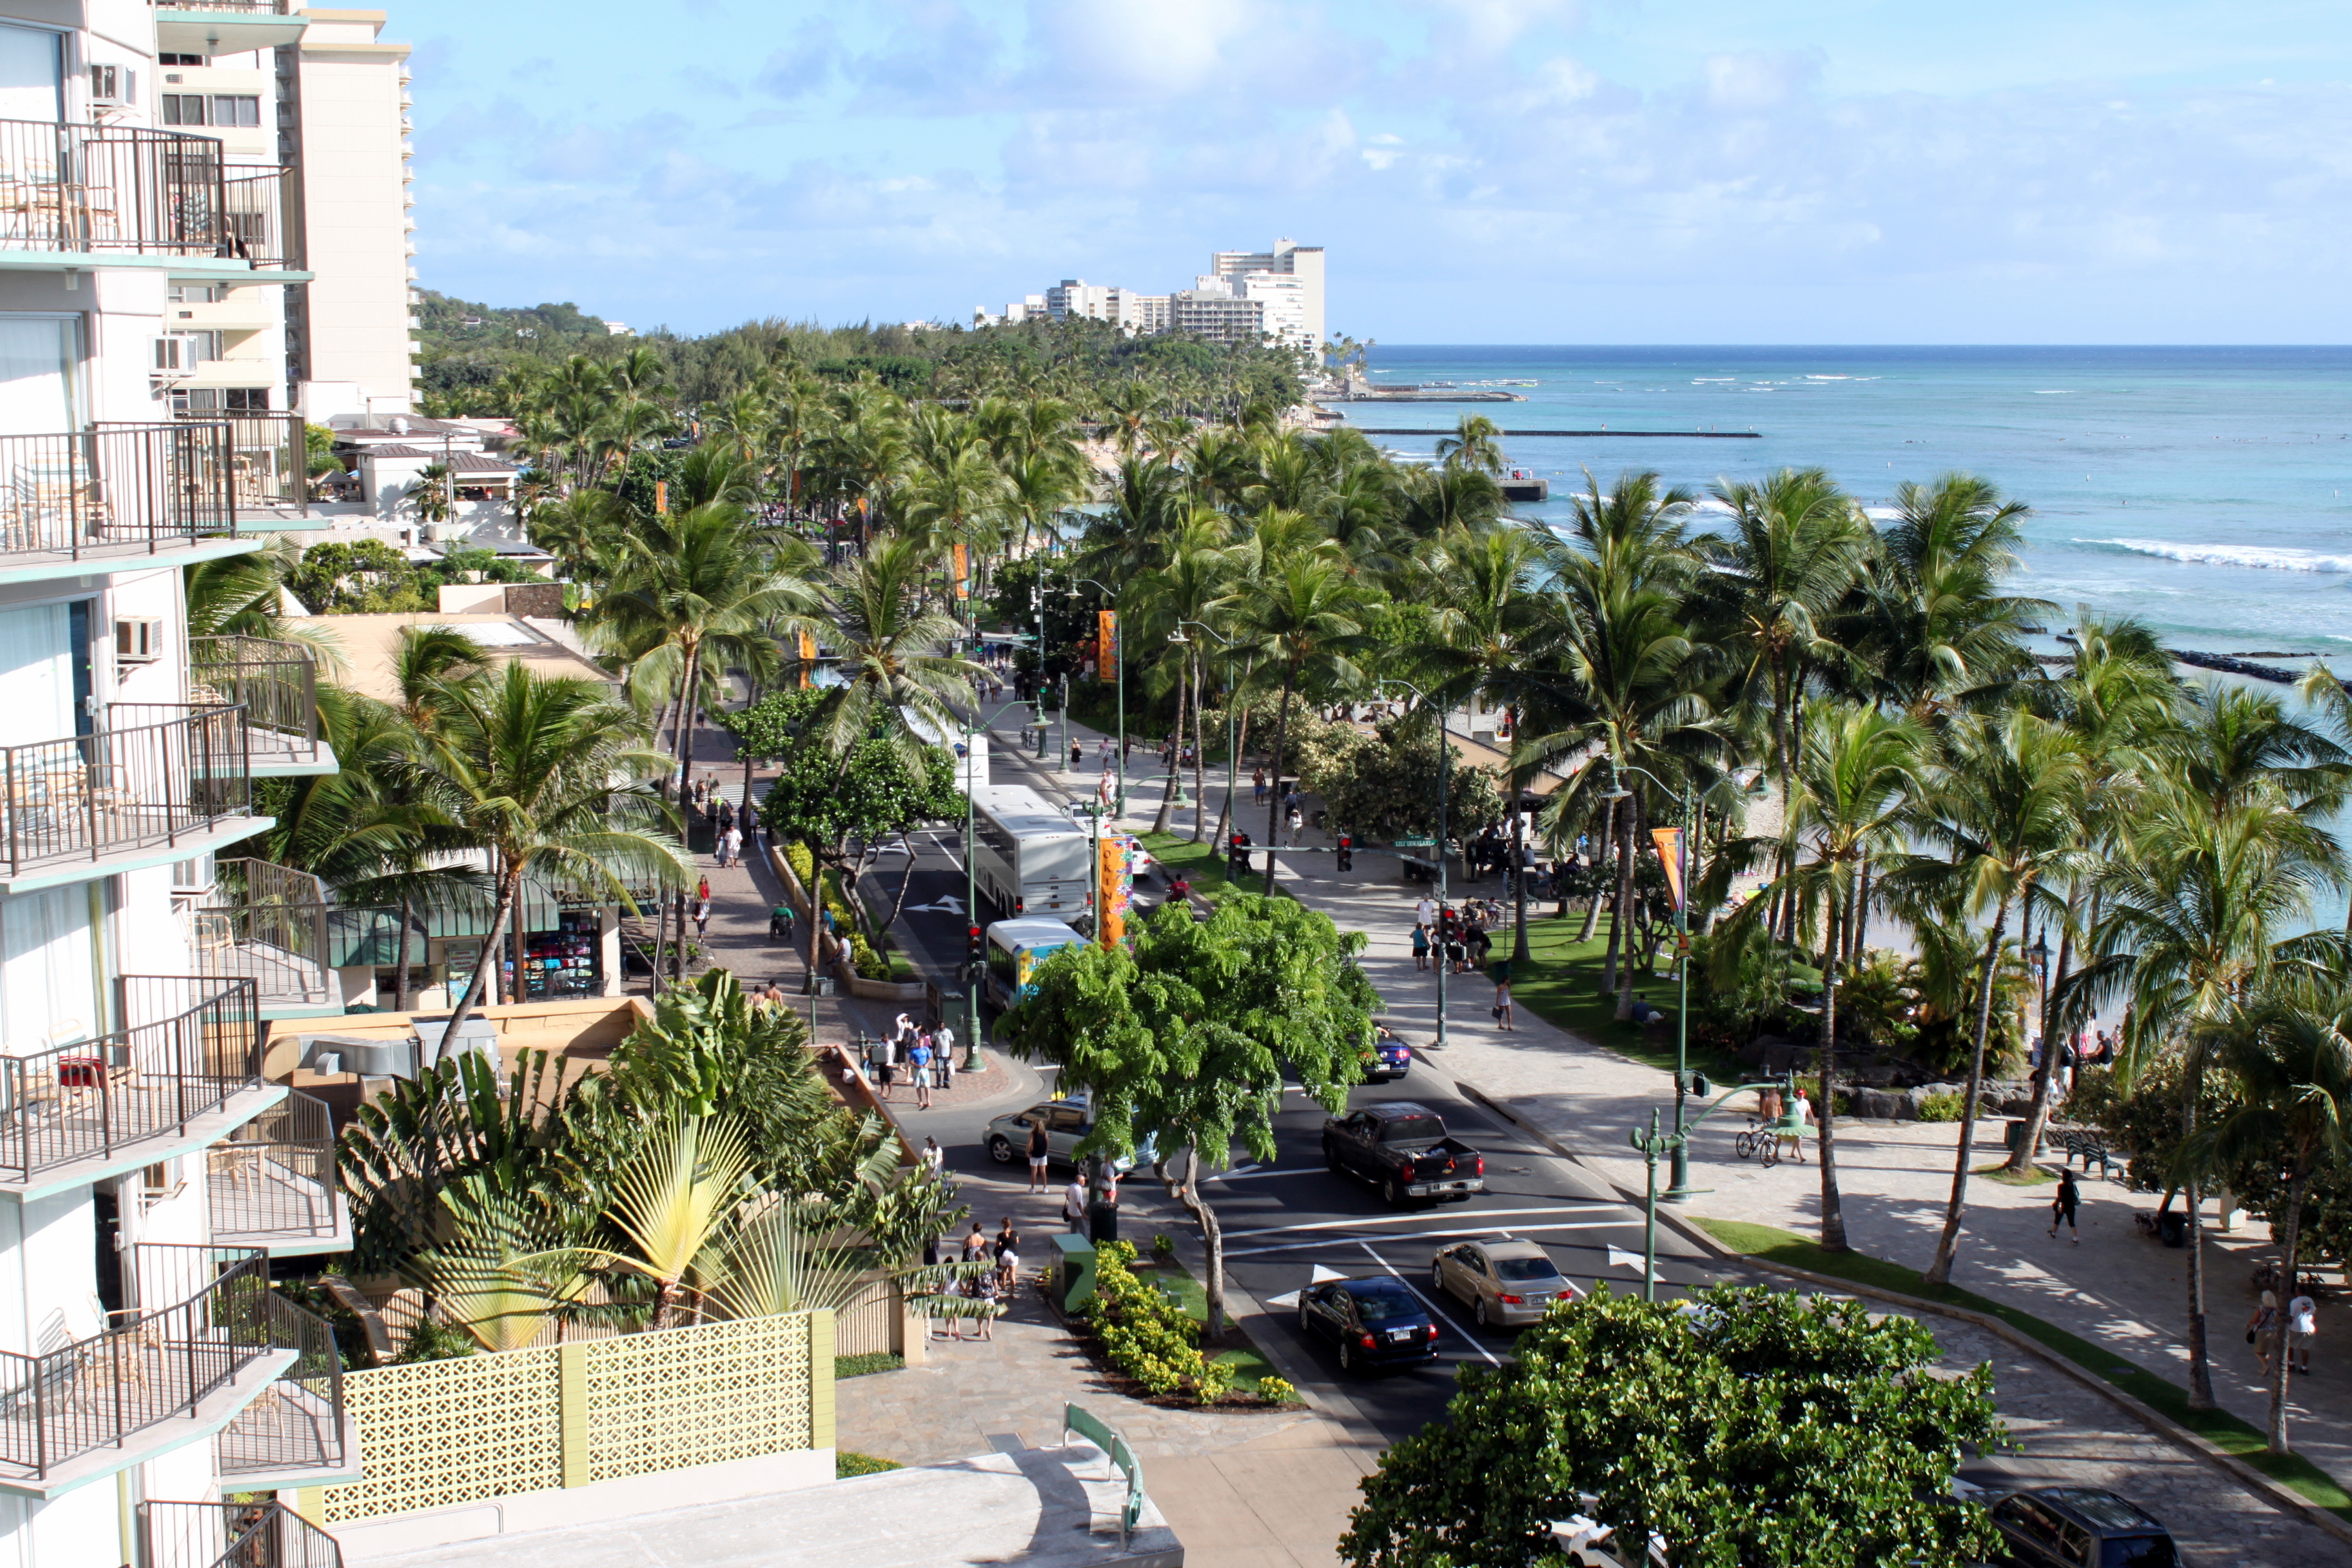 View of Waikiki Beach in Hawaii